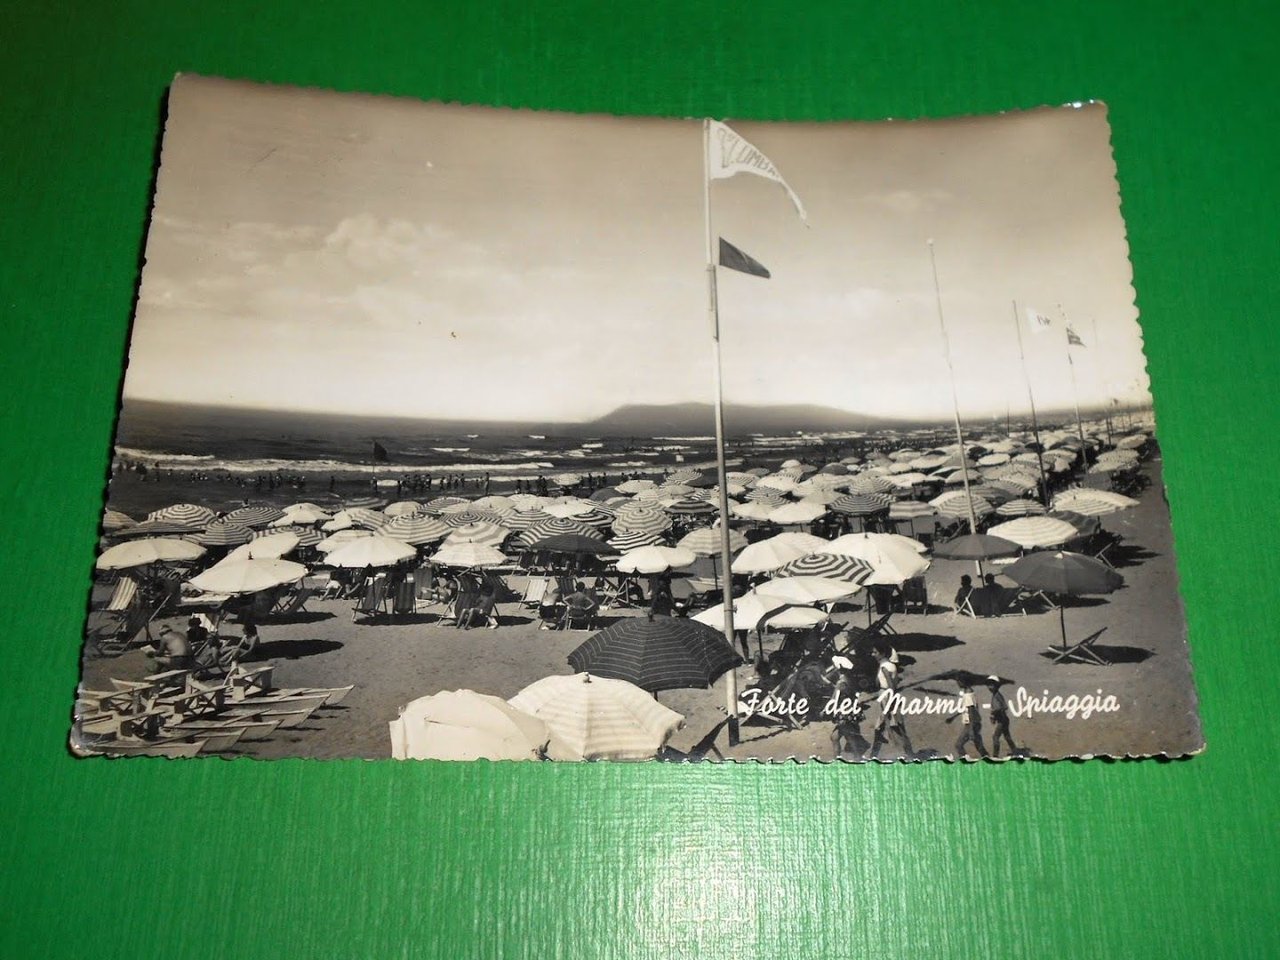 Cartolina Forte dei Marmi - Spiaggia 1956.